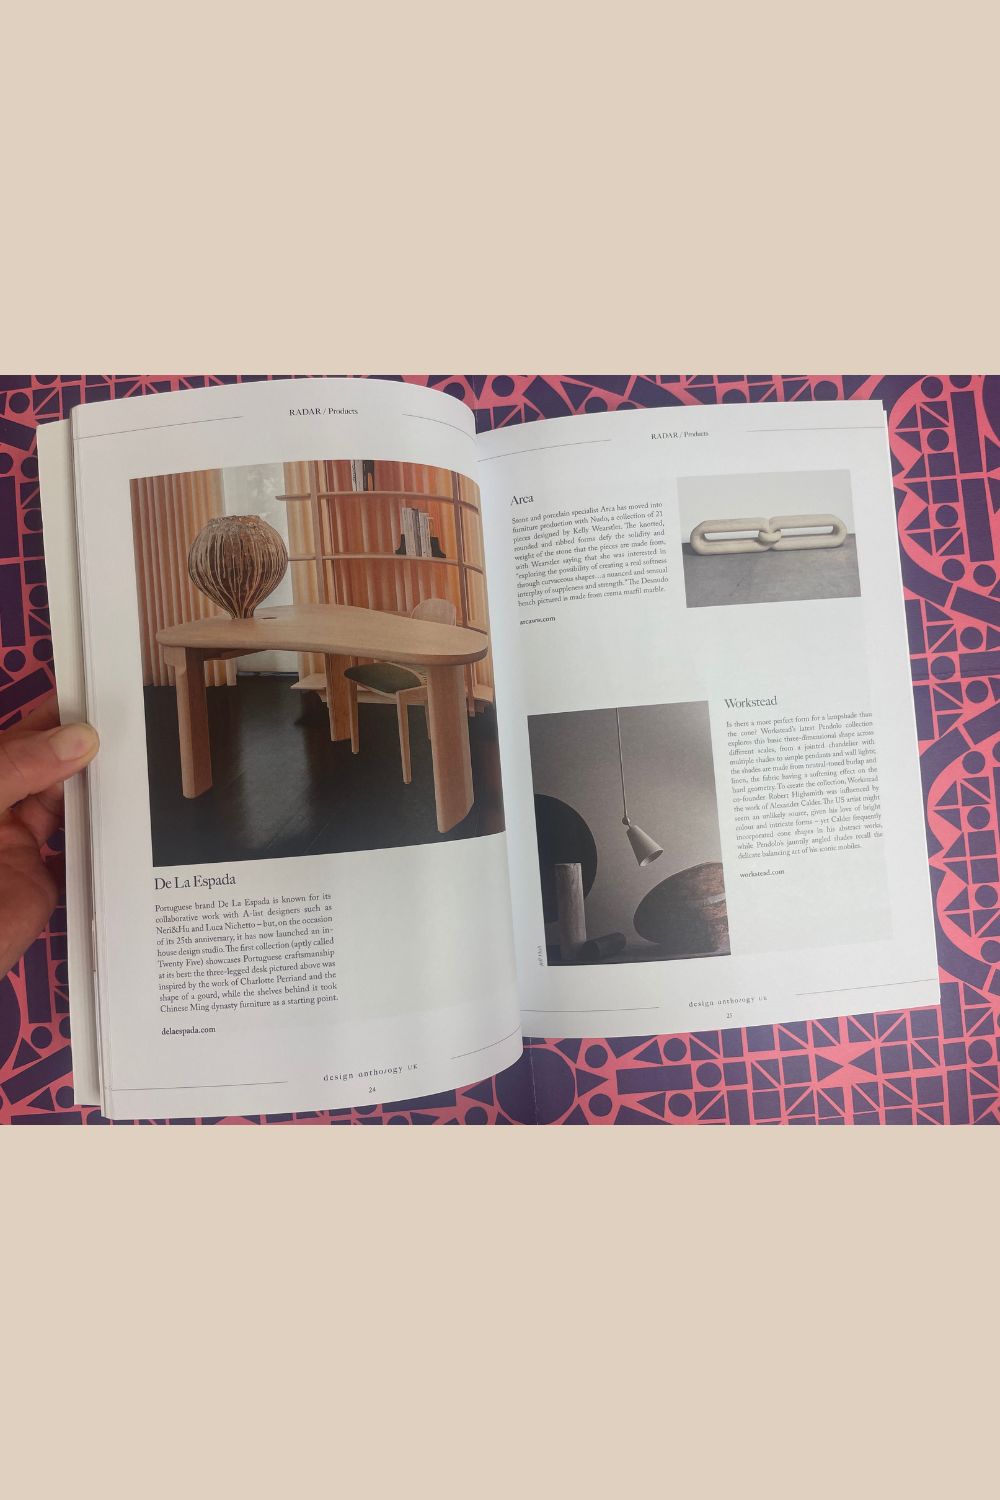 Design Anthology UK Issue 14